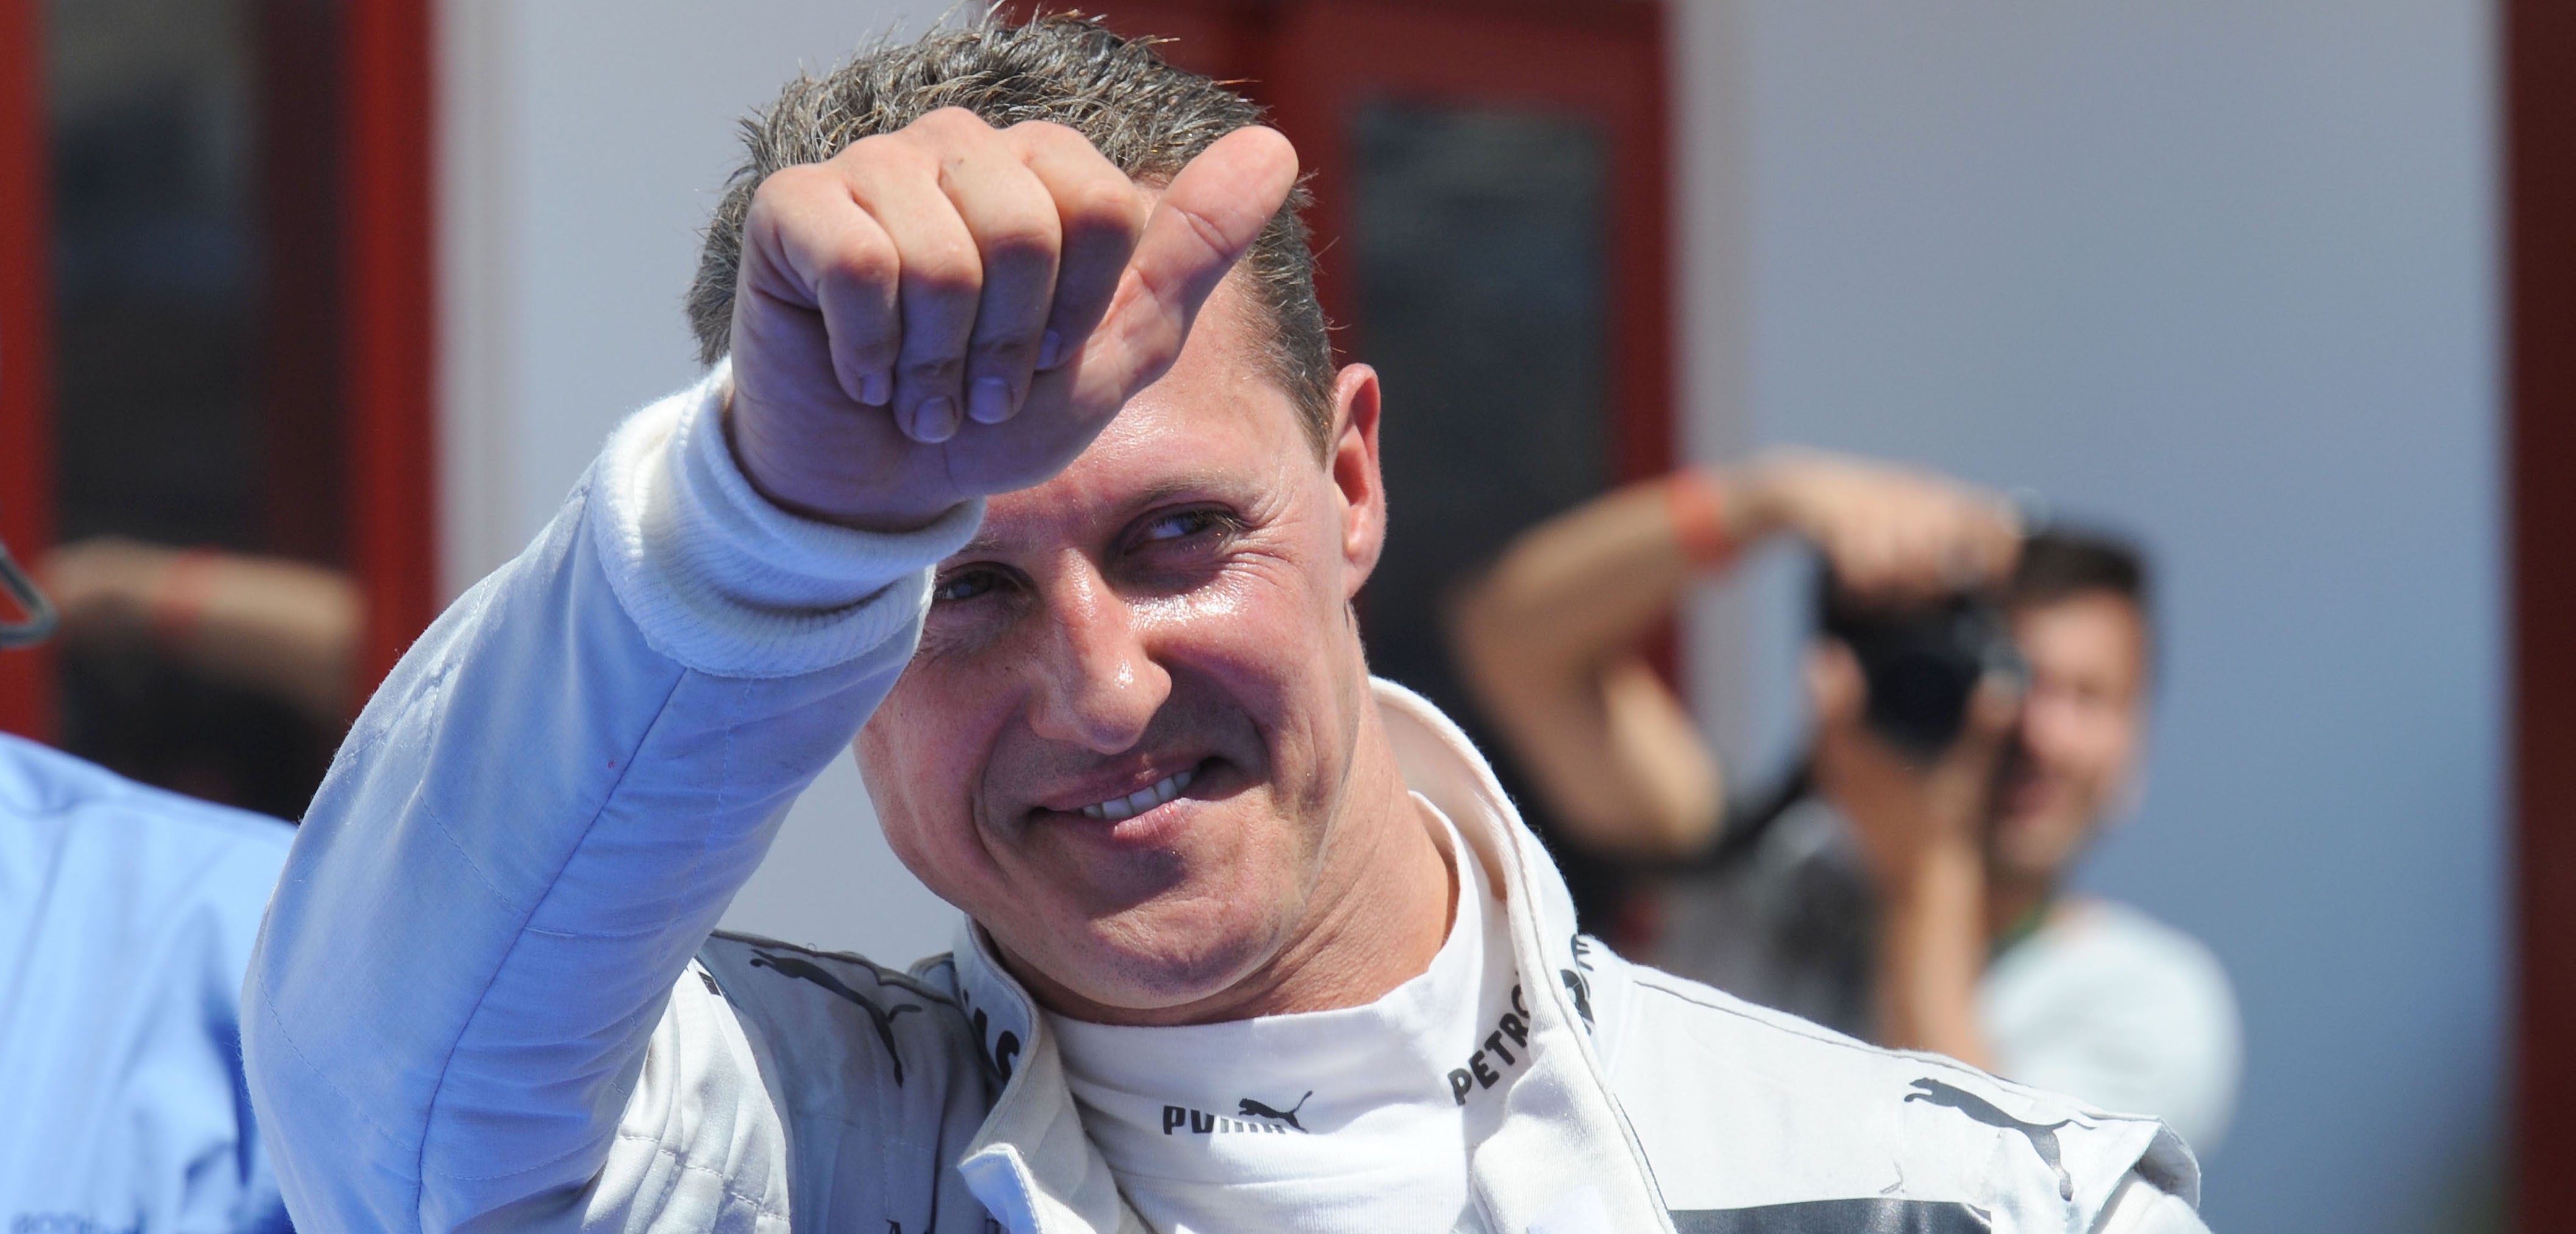 Formigine inquiète de l'état de  santé de Michael Schumacher